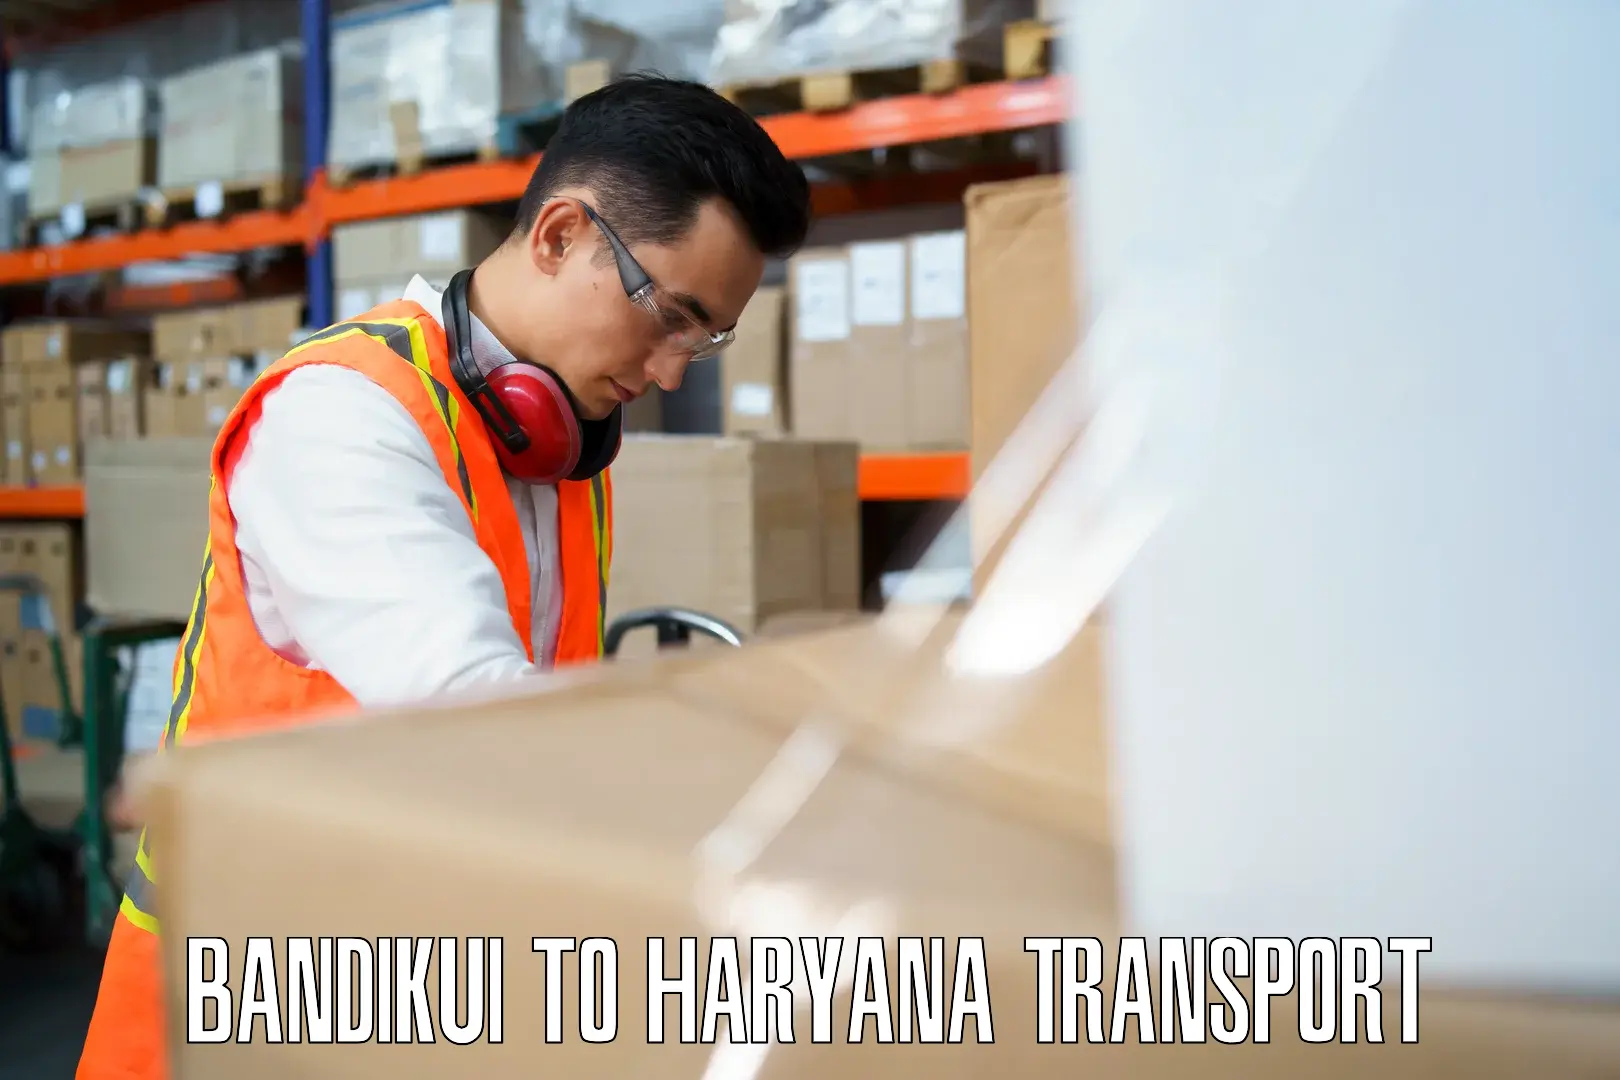 Delivery service Bandikui to IIIT Sonepat